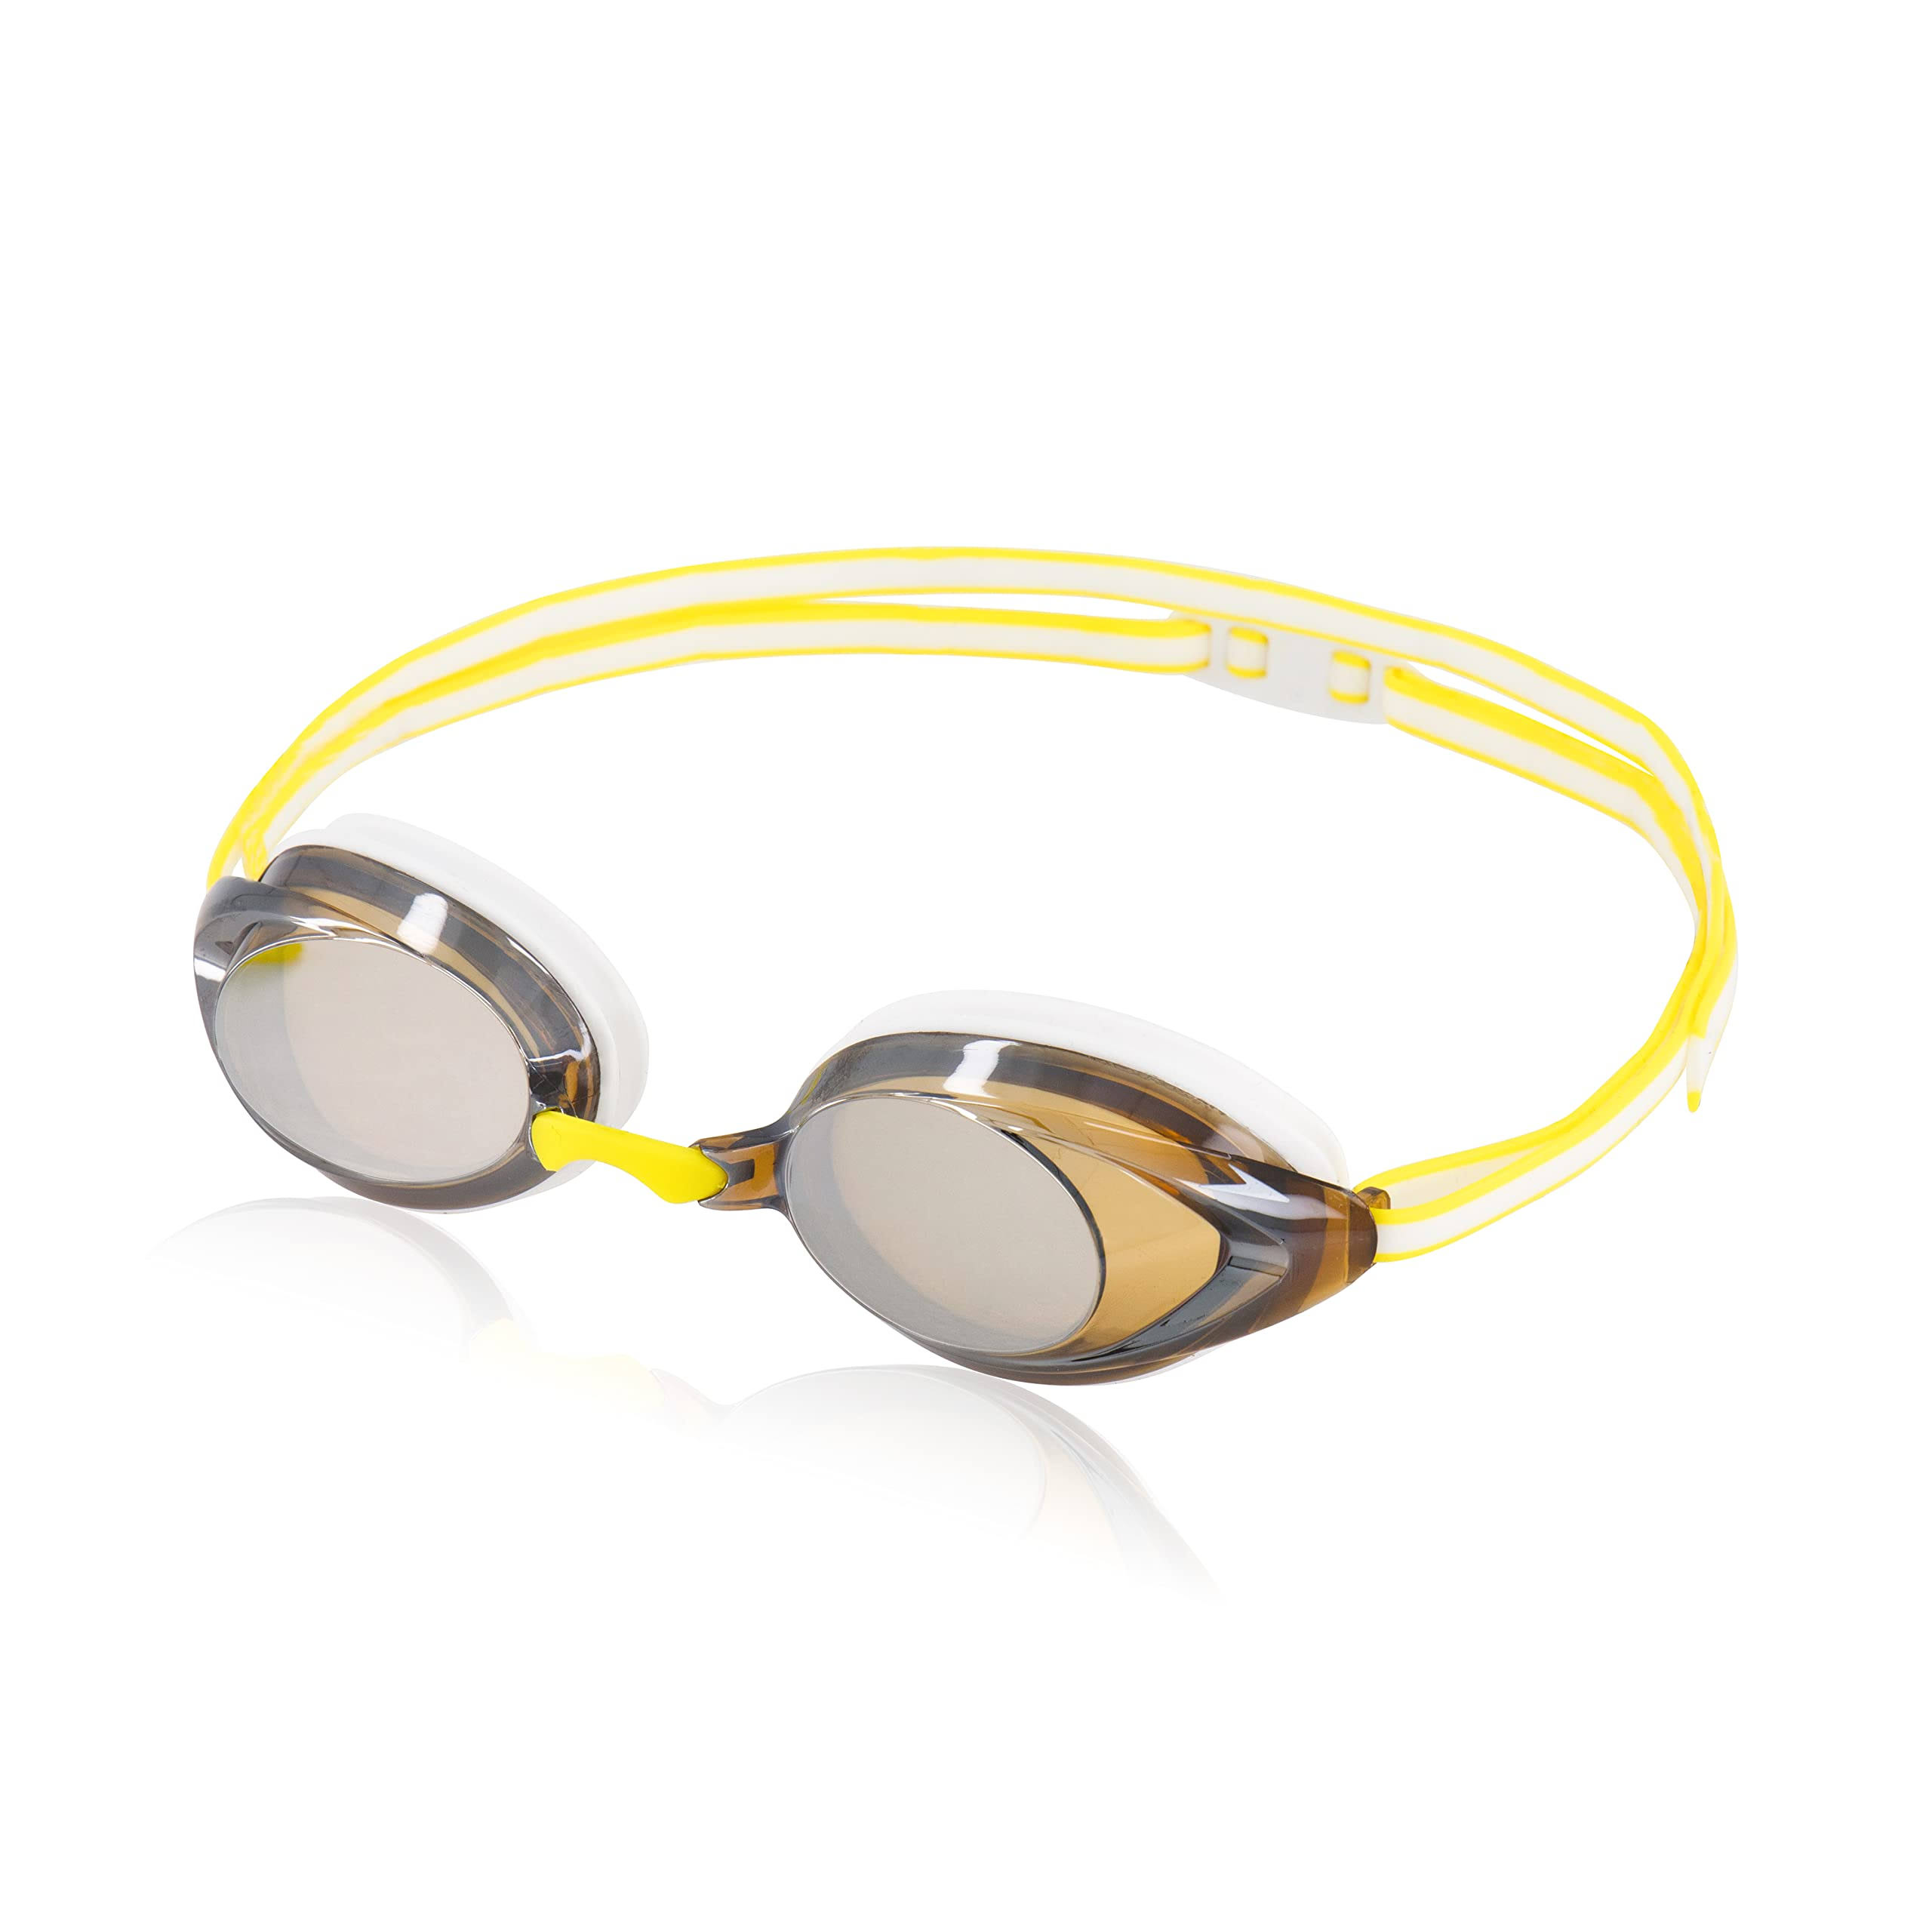 Speedo Women's Vanquisher 2.0 Mirrored Swim Goggle White/Amber/Yellow